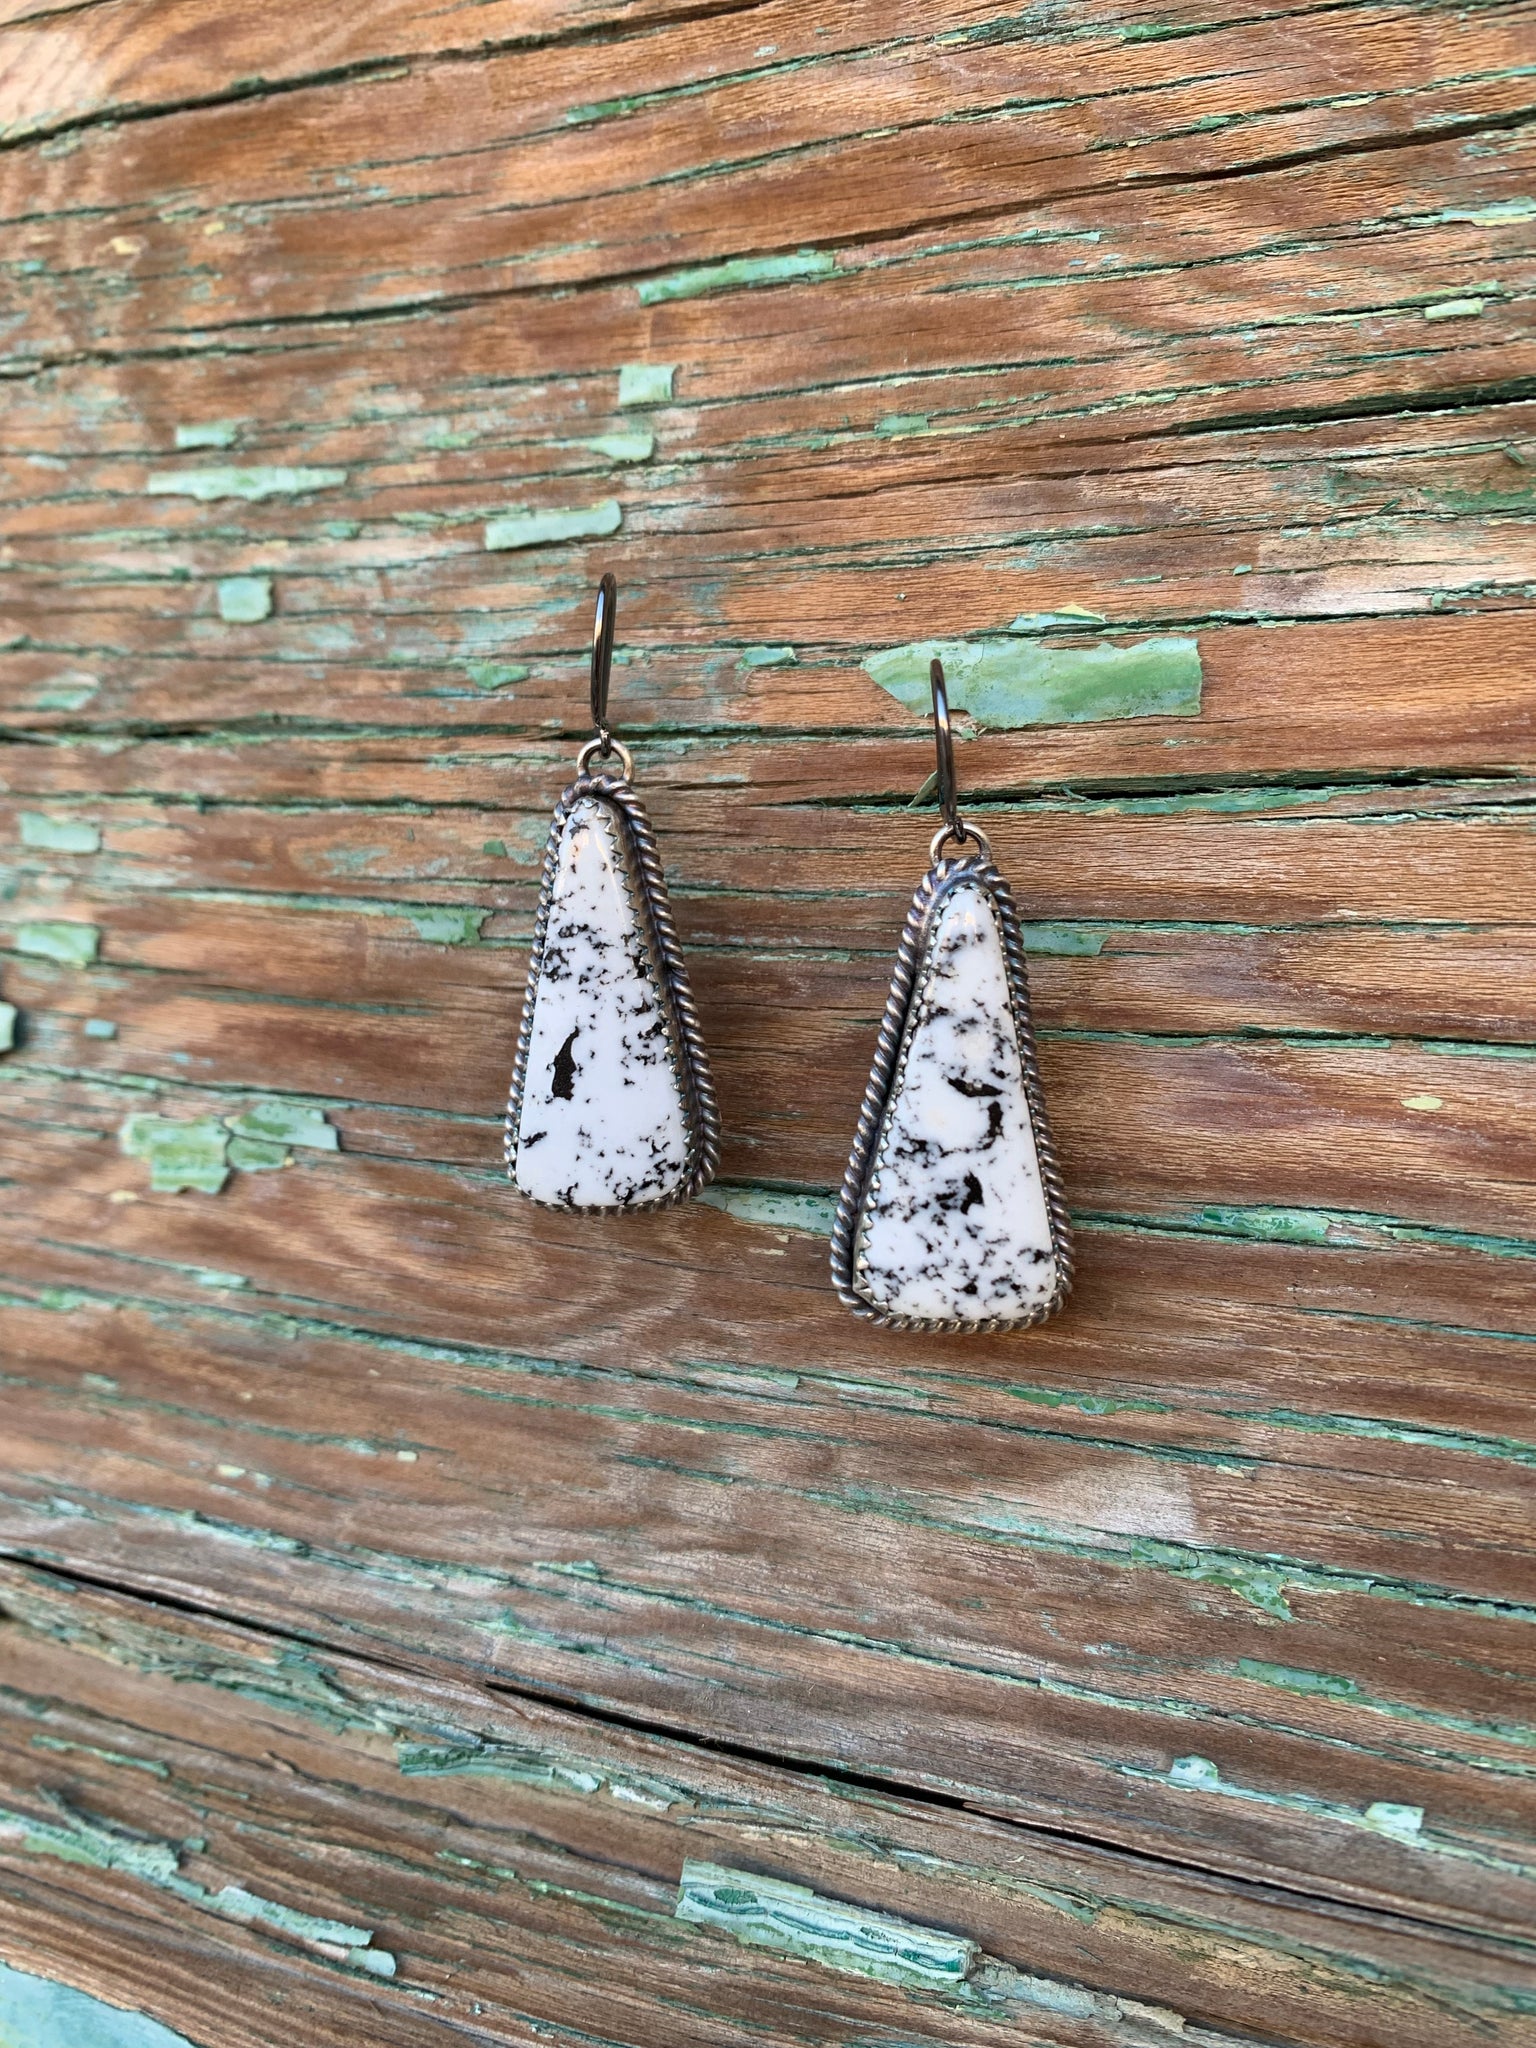 Teardrop White Buffalo earrings